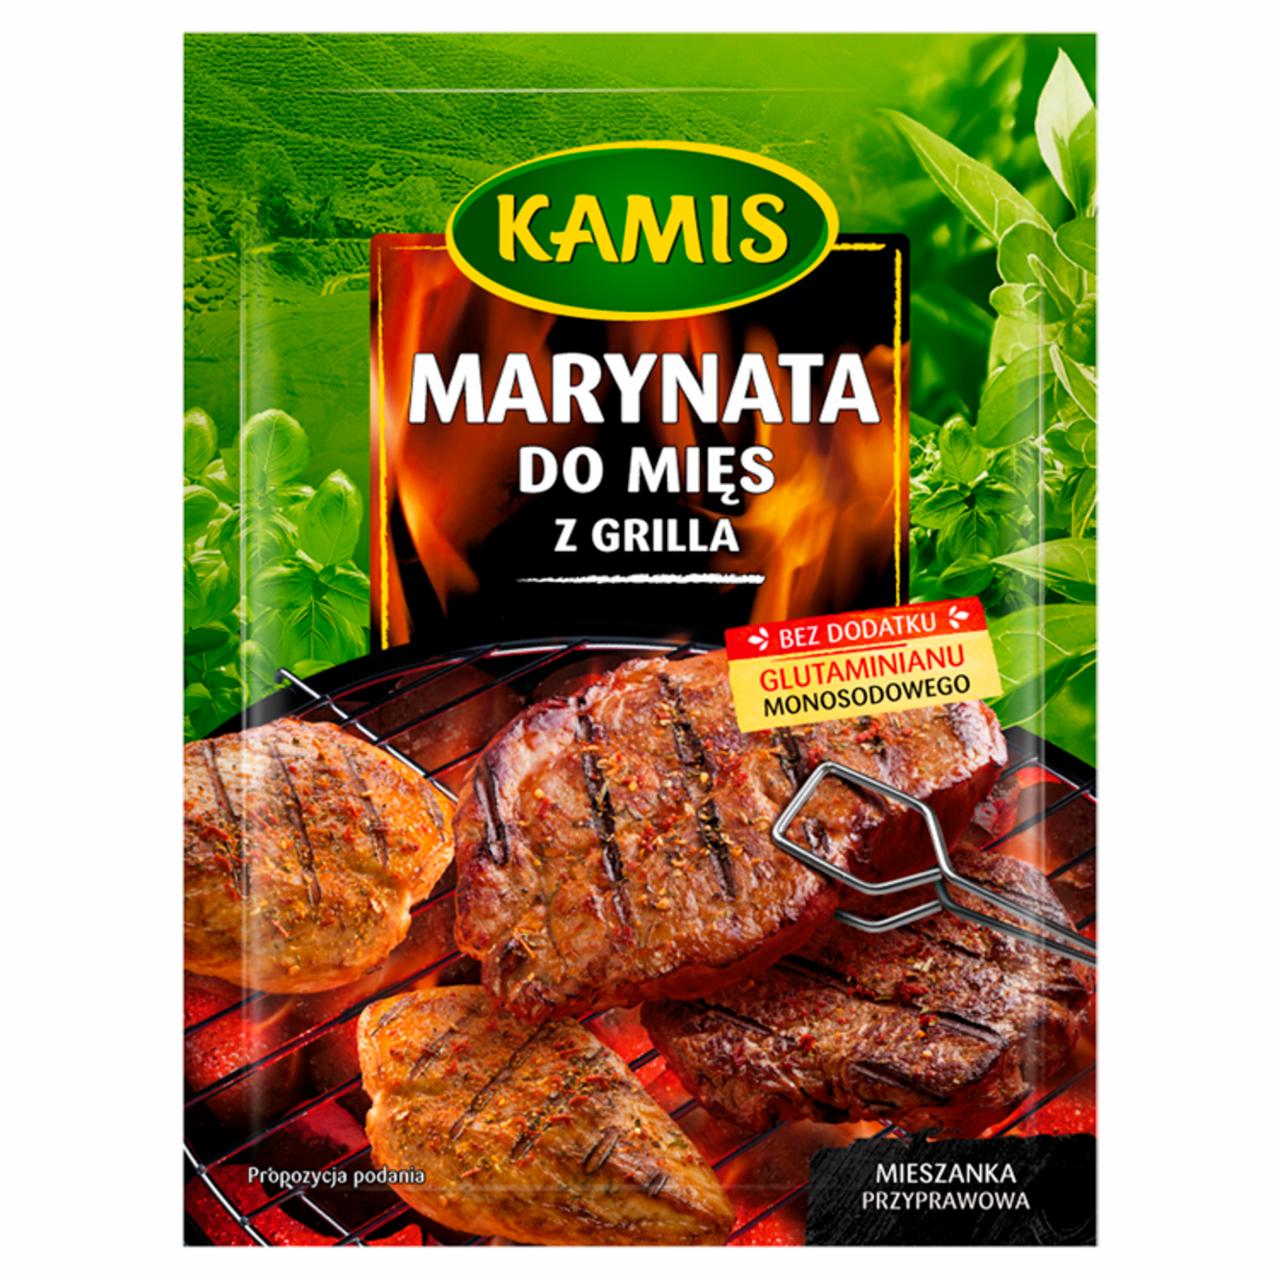 Zdjęcia - Kamis Marynata do mięs z grilla Mieszanka przyprawowa 25 g